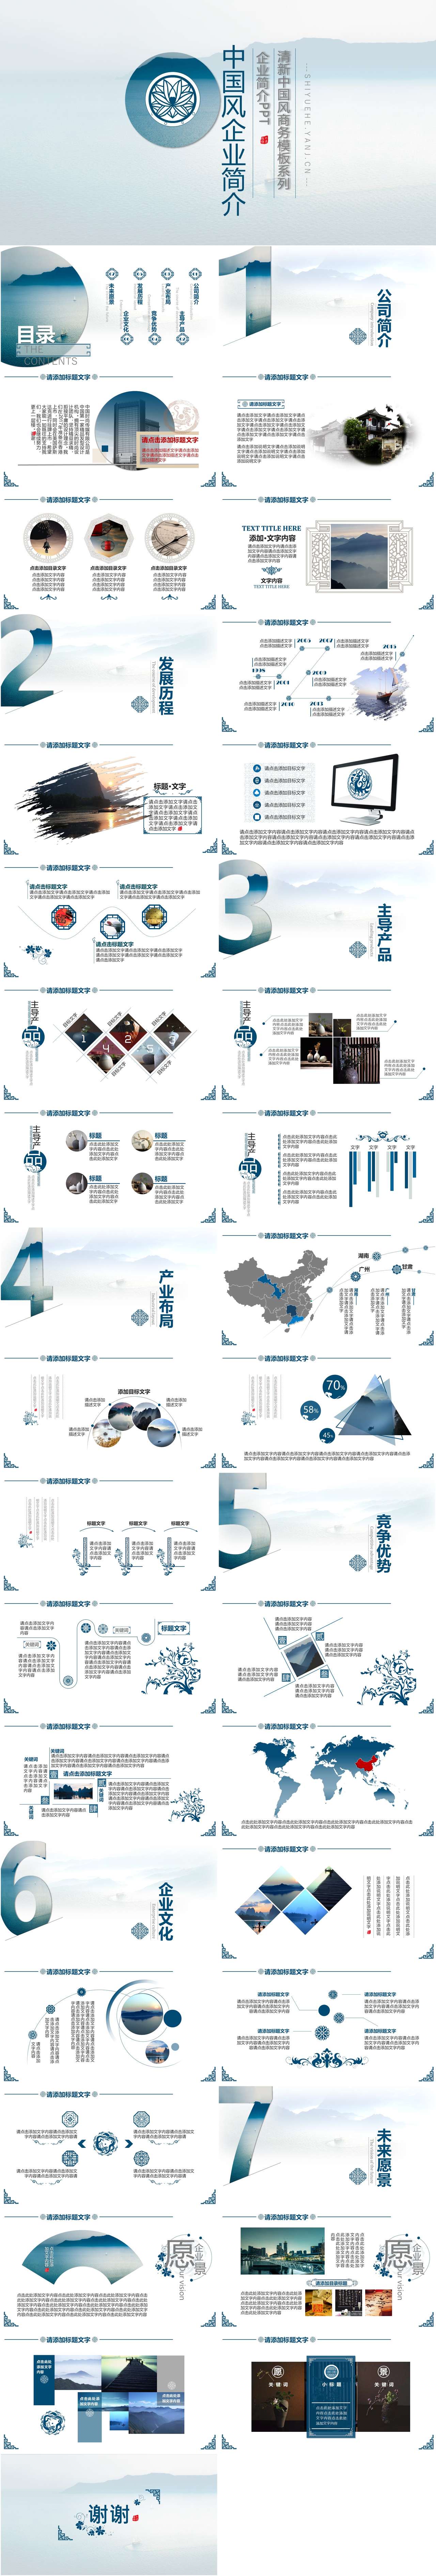 淡雅中国风企业宣传介绍PPT模板